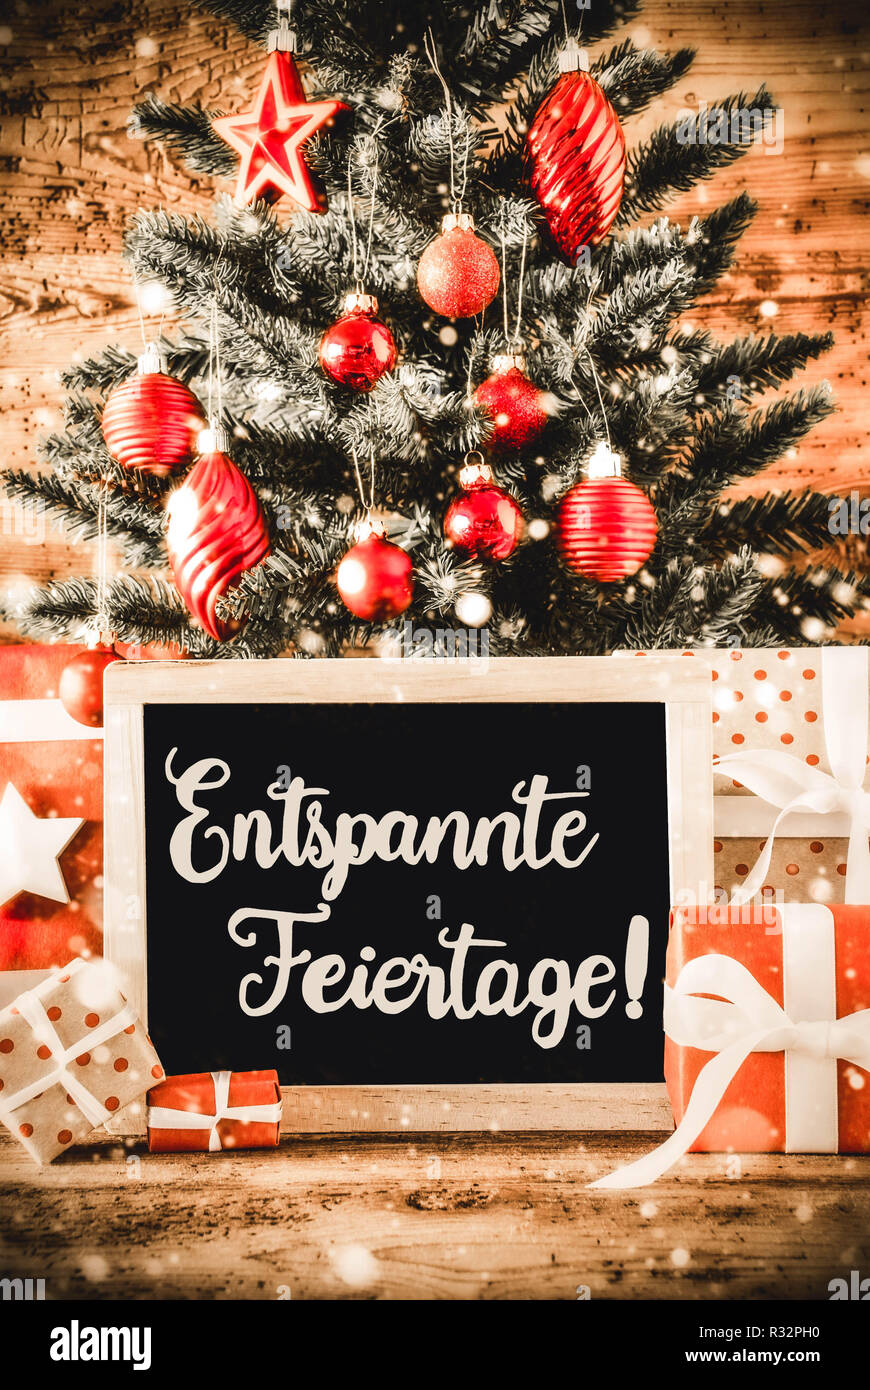 Árbol vertical, regalos, Caligrafía Entspannte Feiertage significa ¡Feliz Navidad! Foto de stock